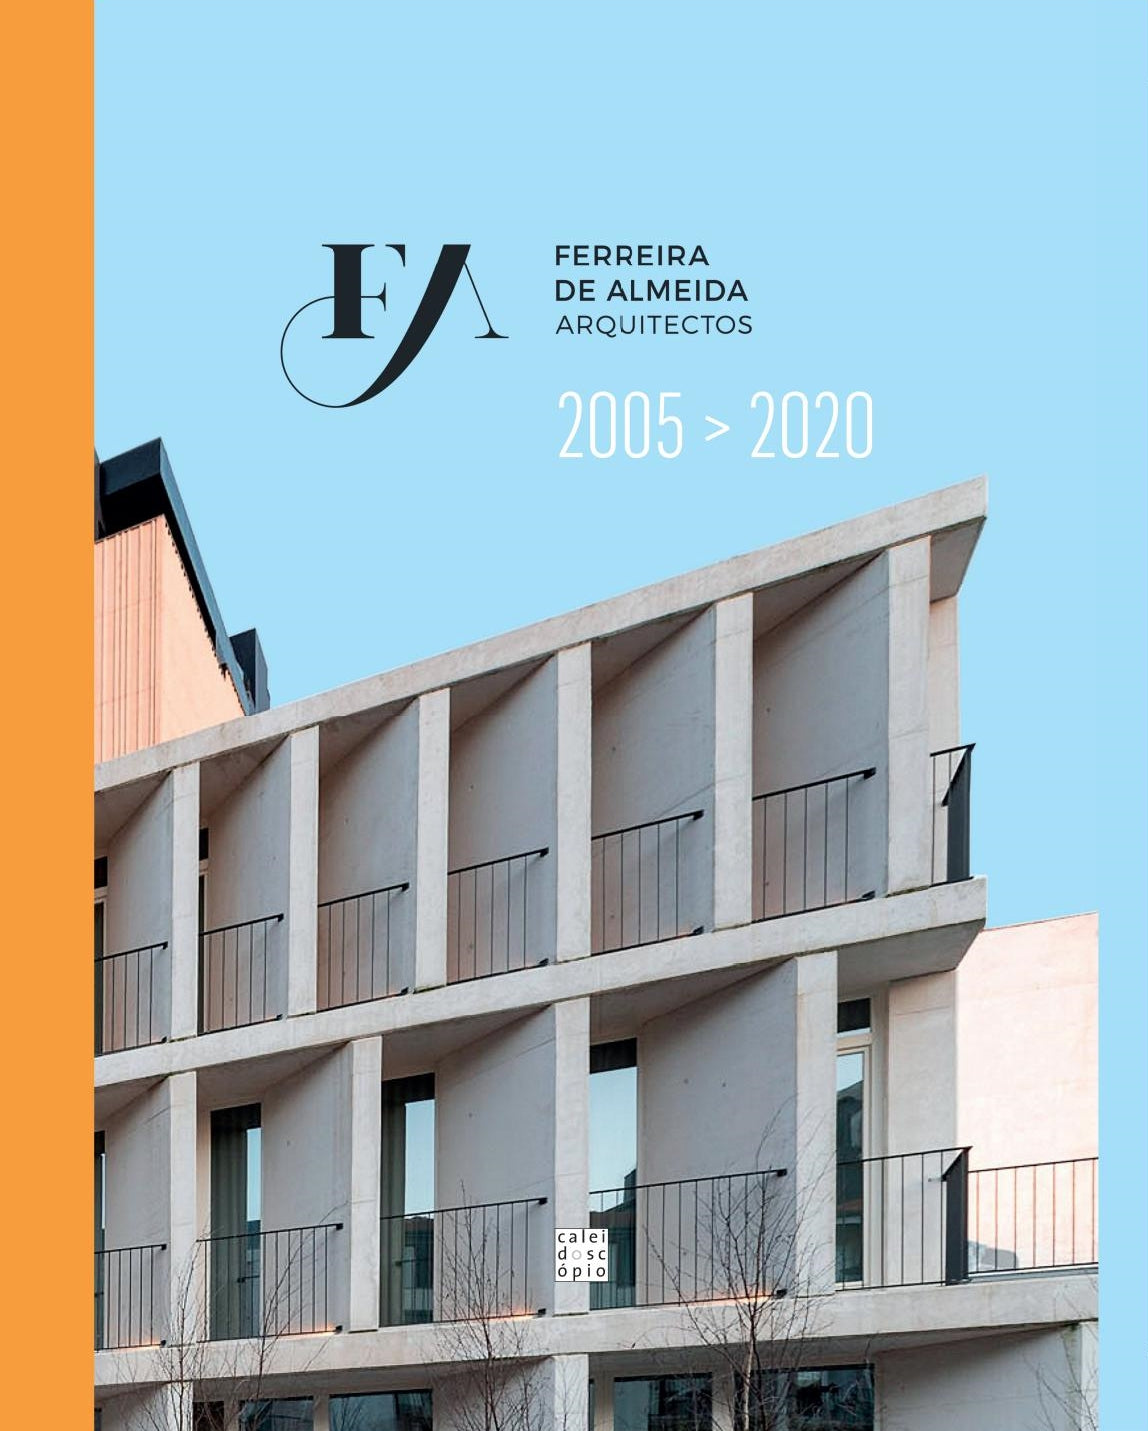 FA Ferreira de Almeida Arquitectos 2005>2020